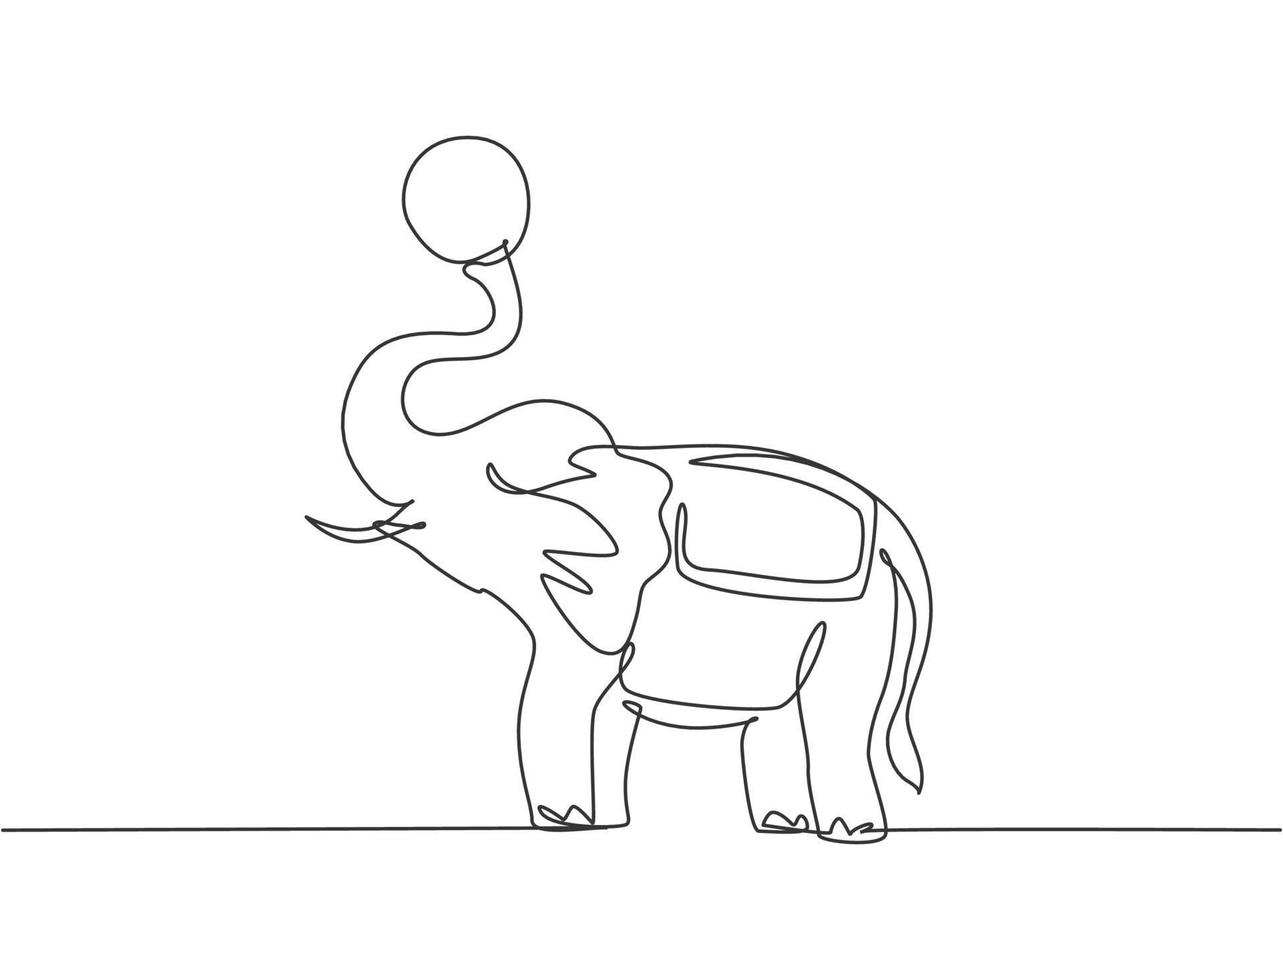 uma única linha de desenho de um elefante está jogando uma bola no final de sua tromba. o público do circo ficou maravilhado com o show. moderna linha contínua desenhar design gráfico ilustração vetorial. vetor